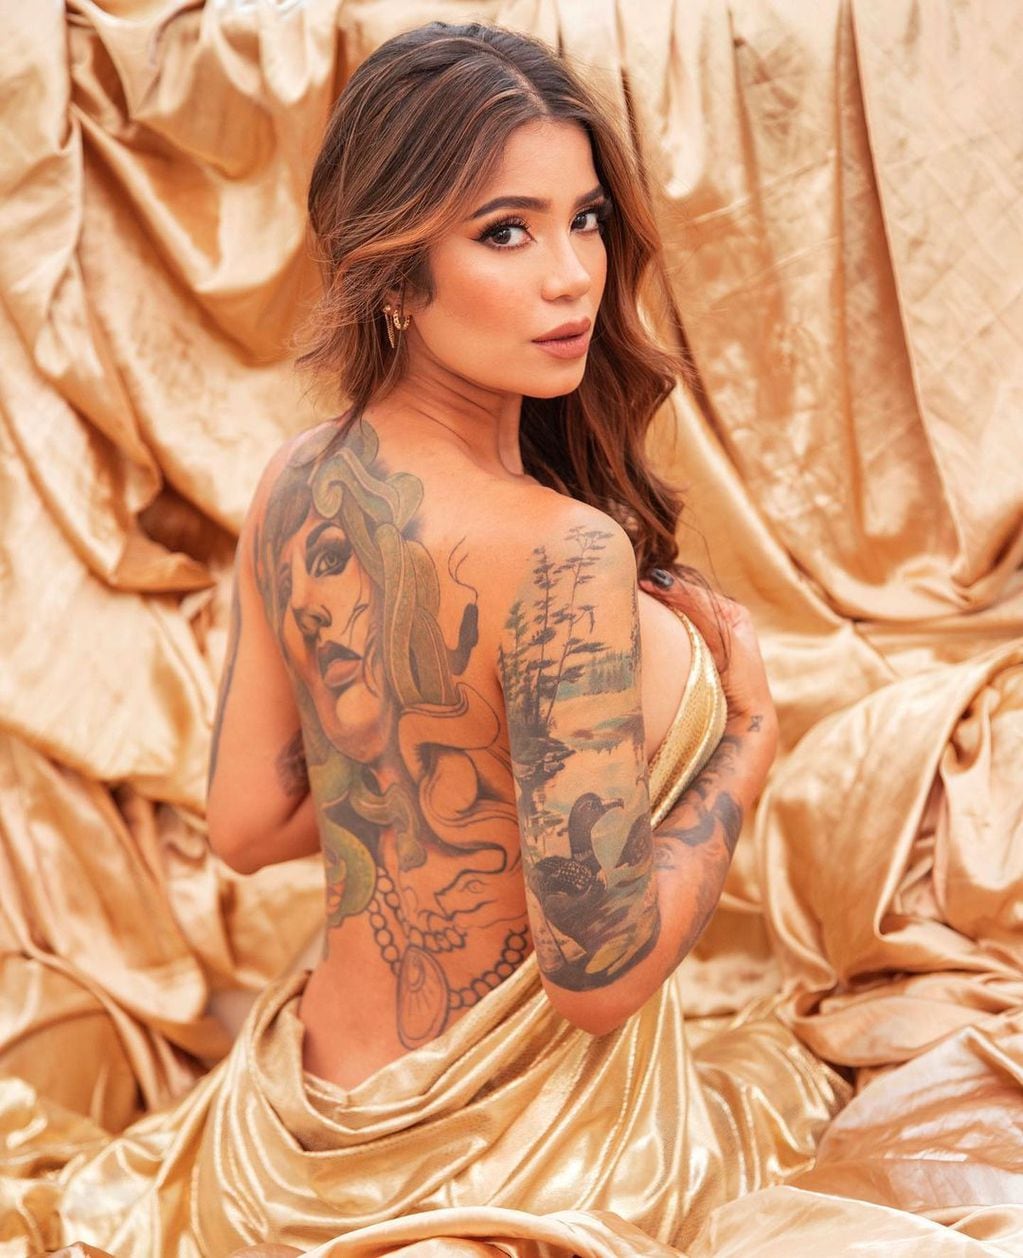 Jenn Muriel Se Fue A Tatuar Y Publicó El Momento En Instagram “terminando Este Lindo Proyecto” 1299